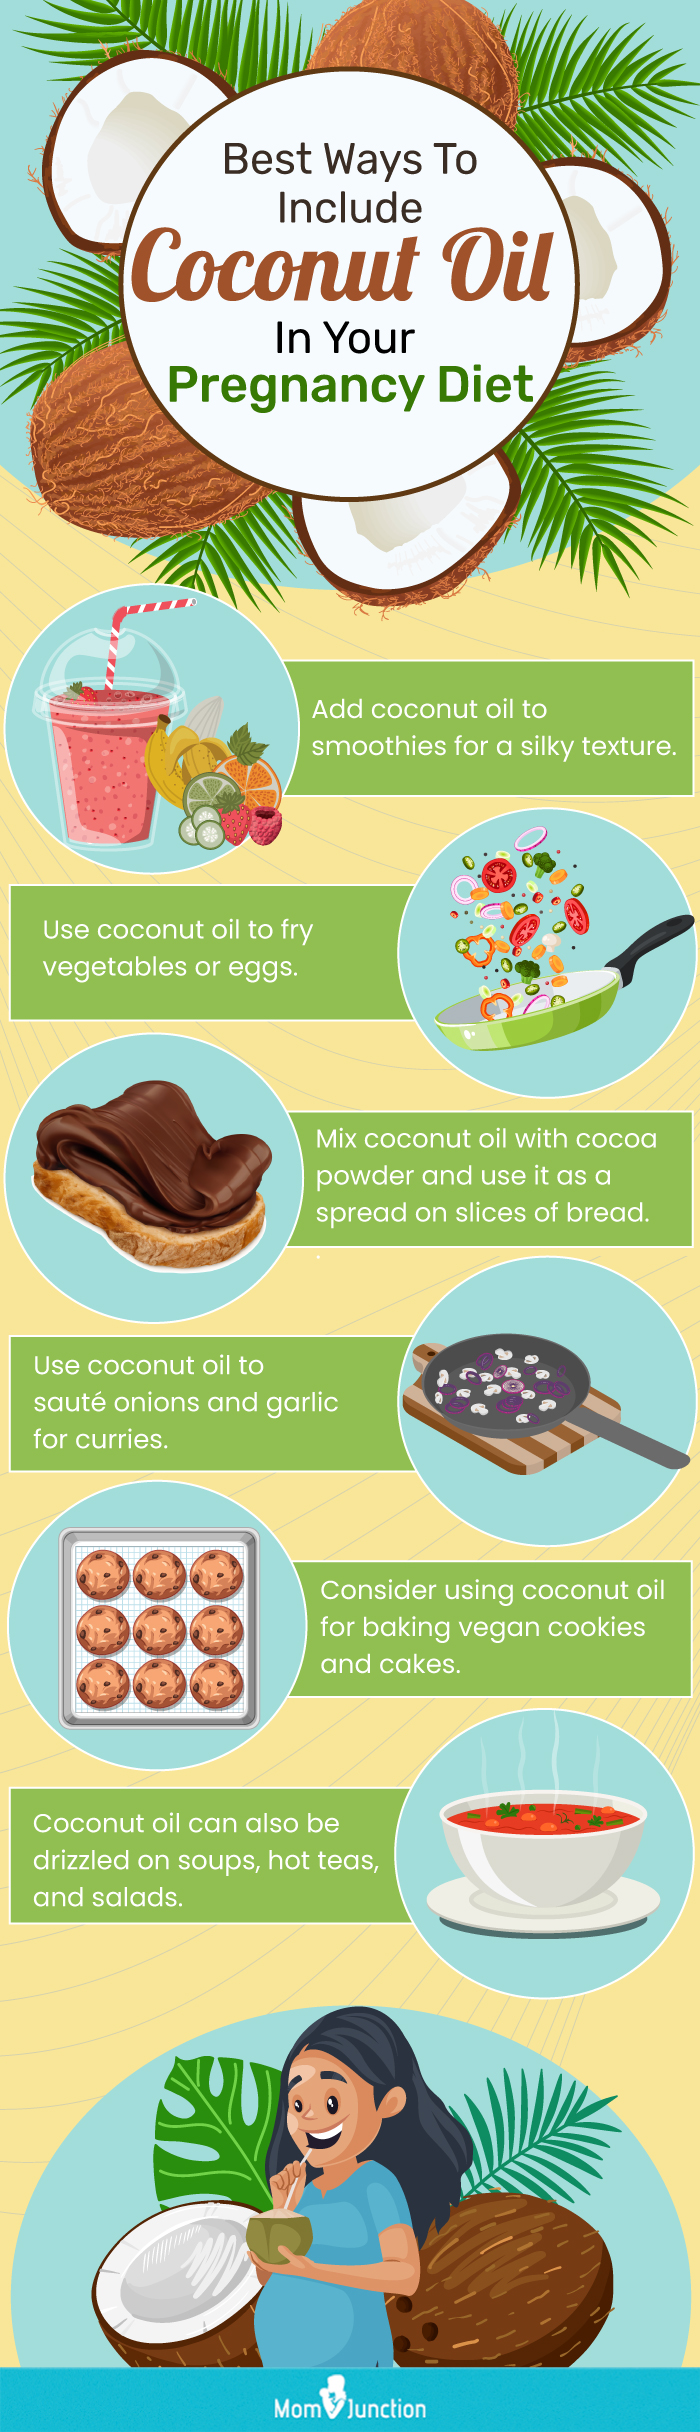 在你的饮食中加入椰子油的简单想法(信息图)